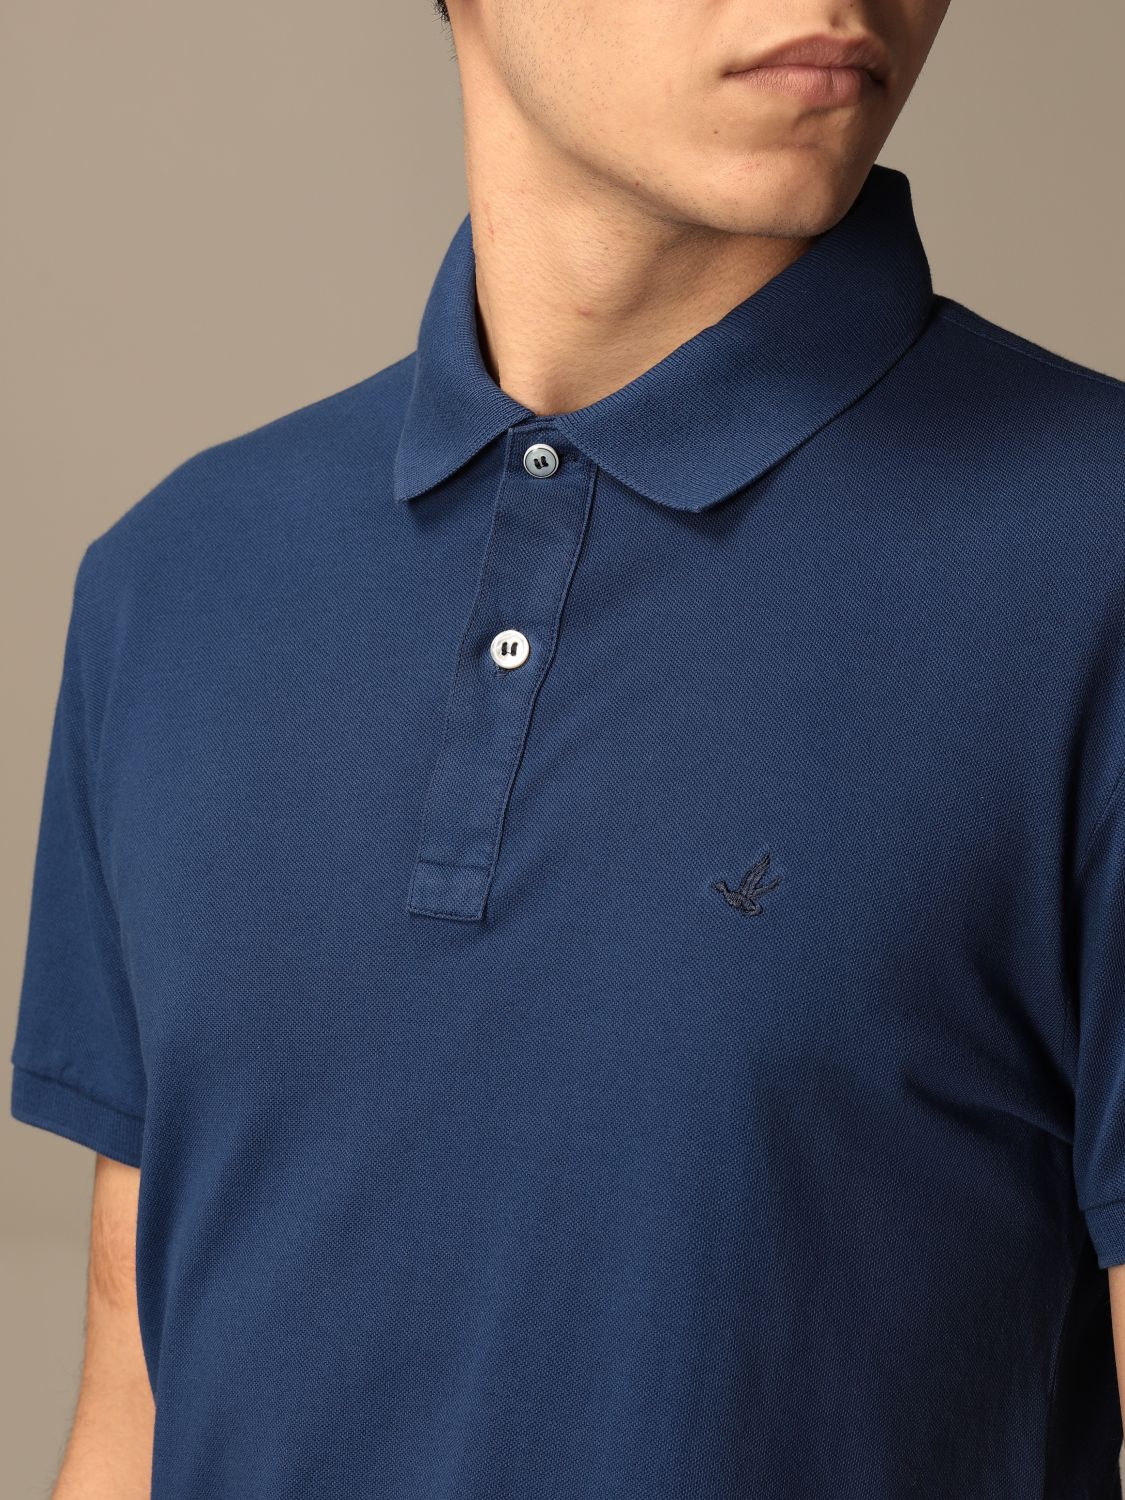 Polo shirt Brooksfield: Brooksfield polo shirt in pique cotton with logo royal blue 4